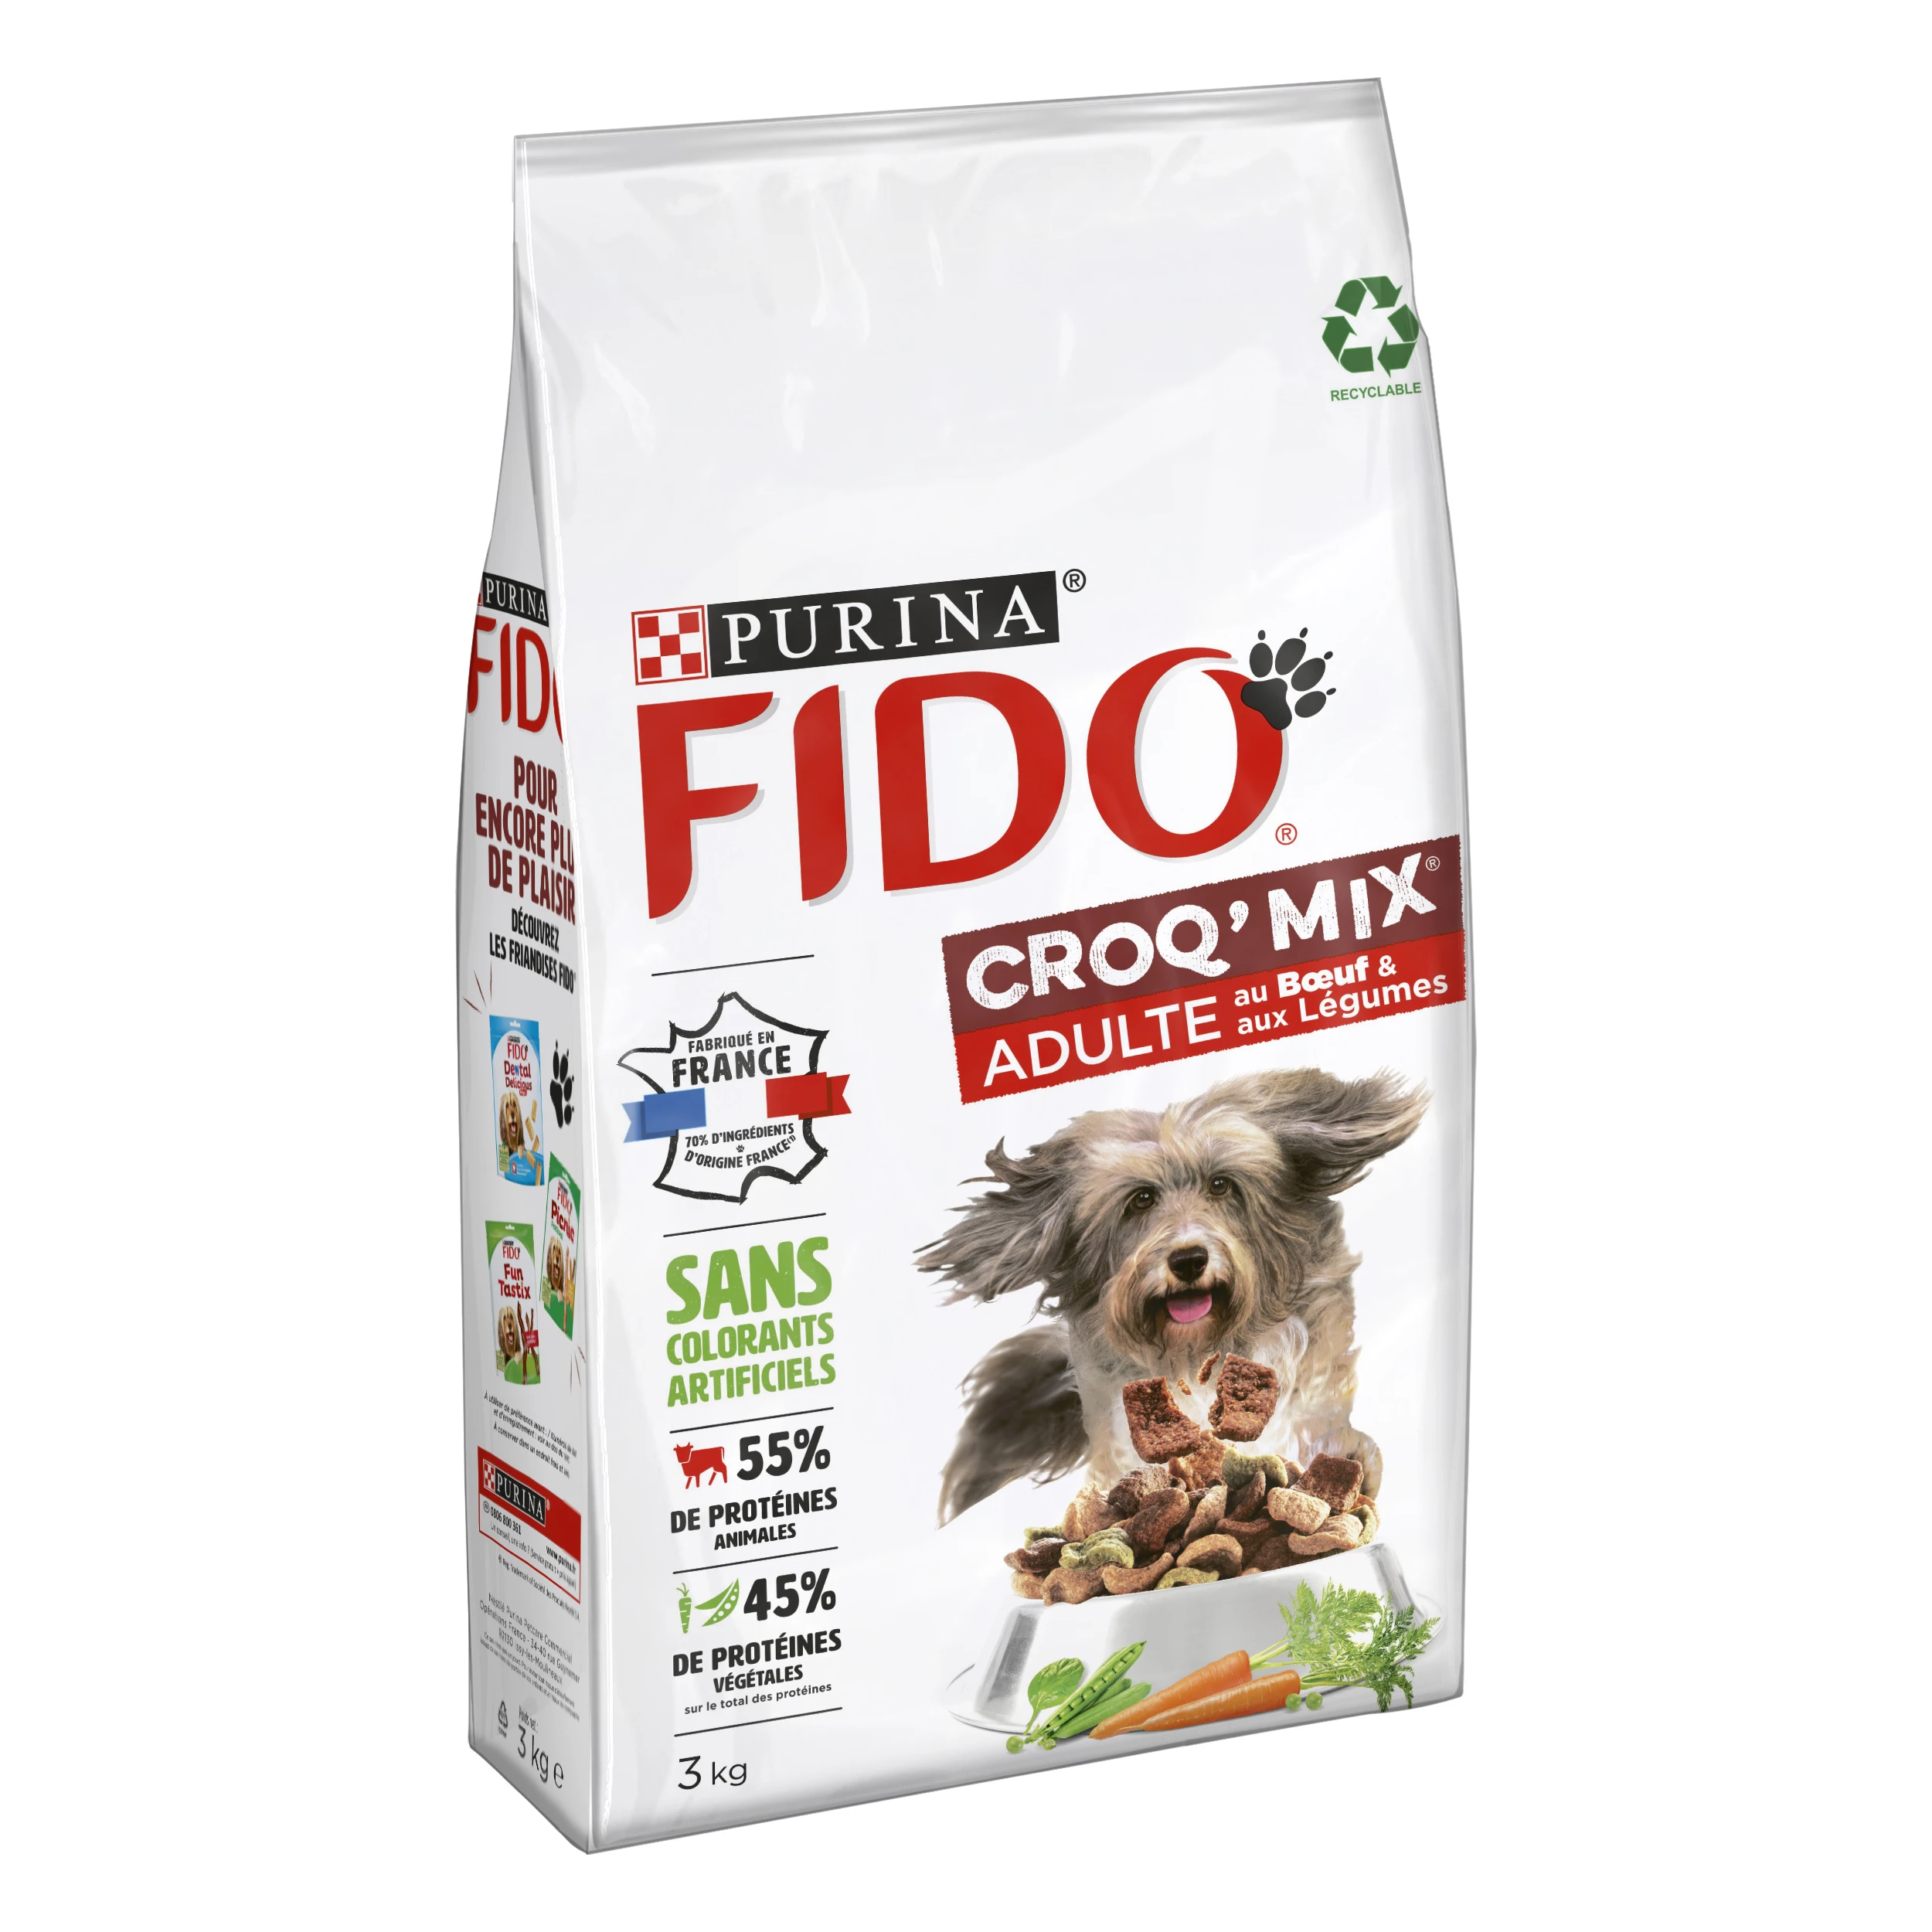 Croq' Mix-Knabberei für erwachsene Hunde mit Rindfleisch und Gemüse, 3 kg - PURINA FIDO